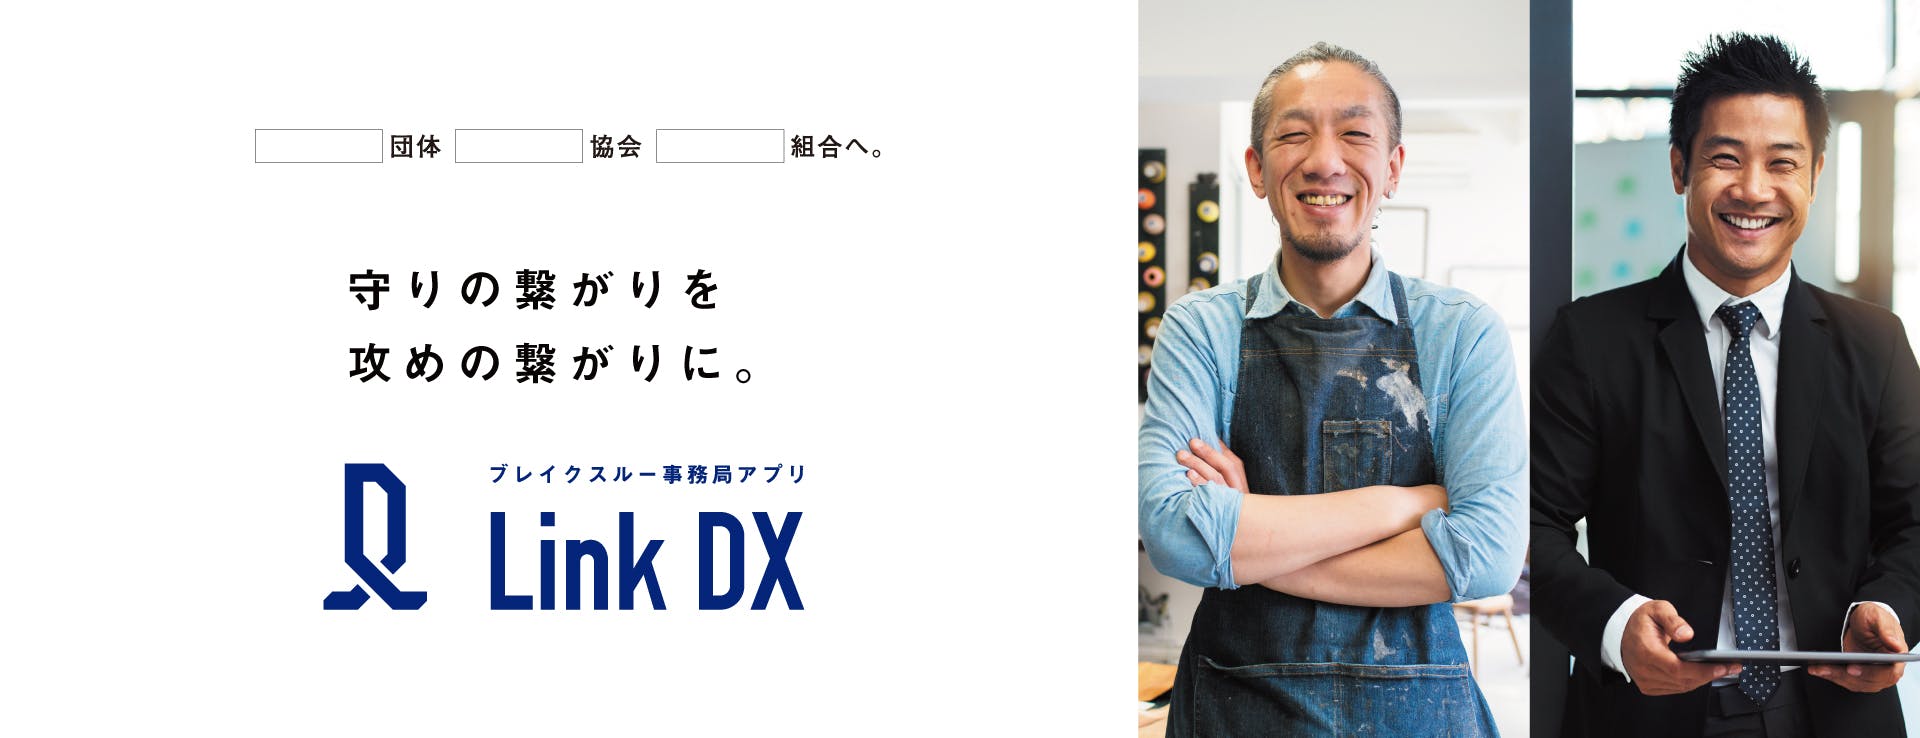 ブレイクスルー事務局アプリ Link DX